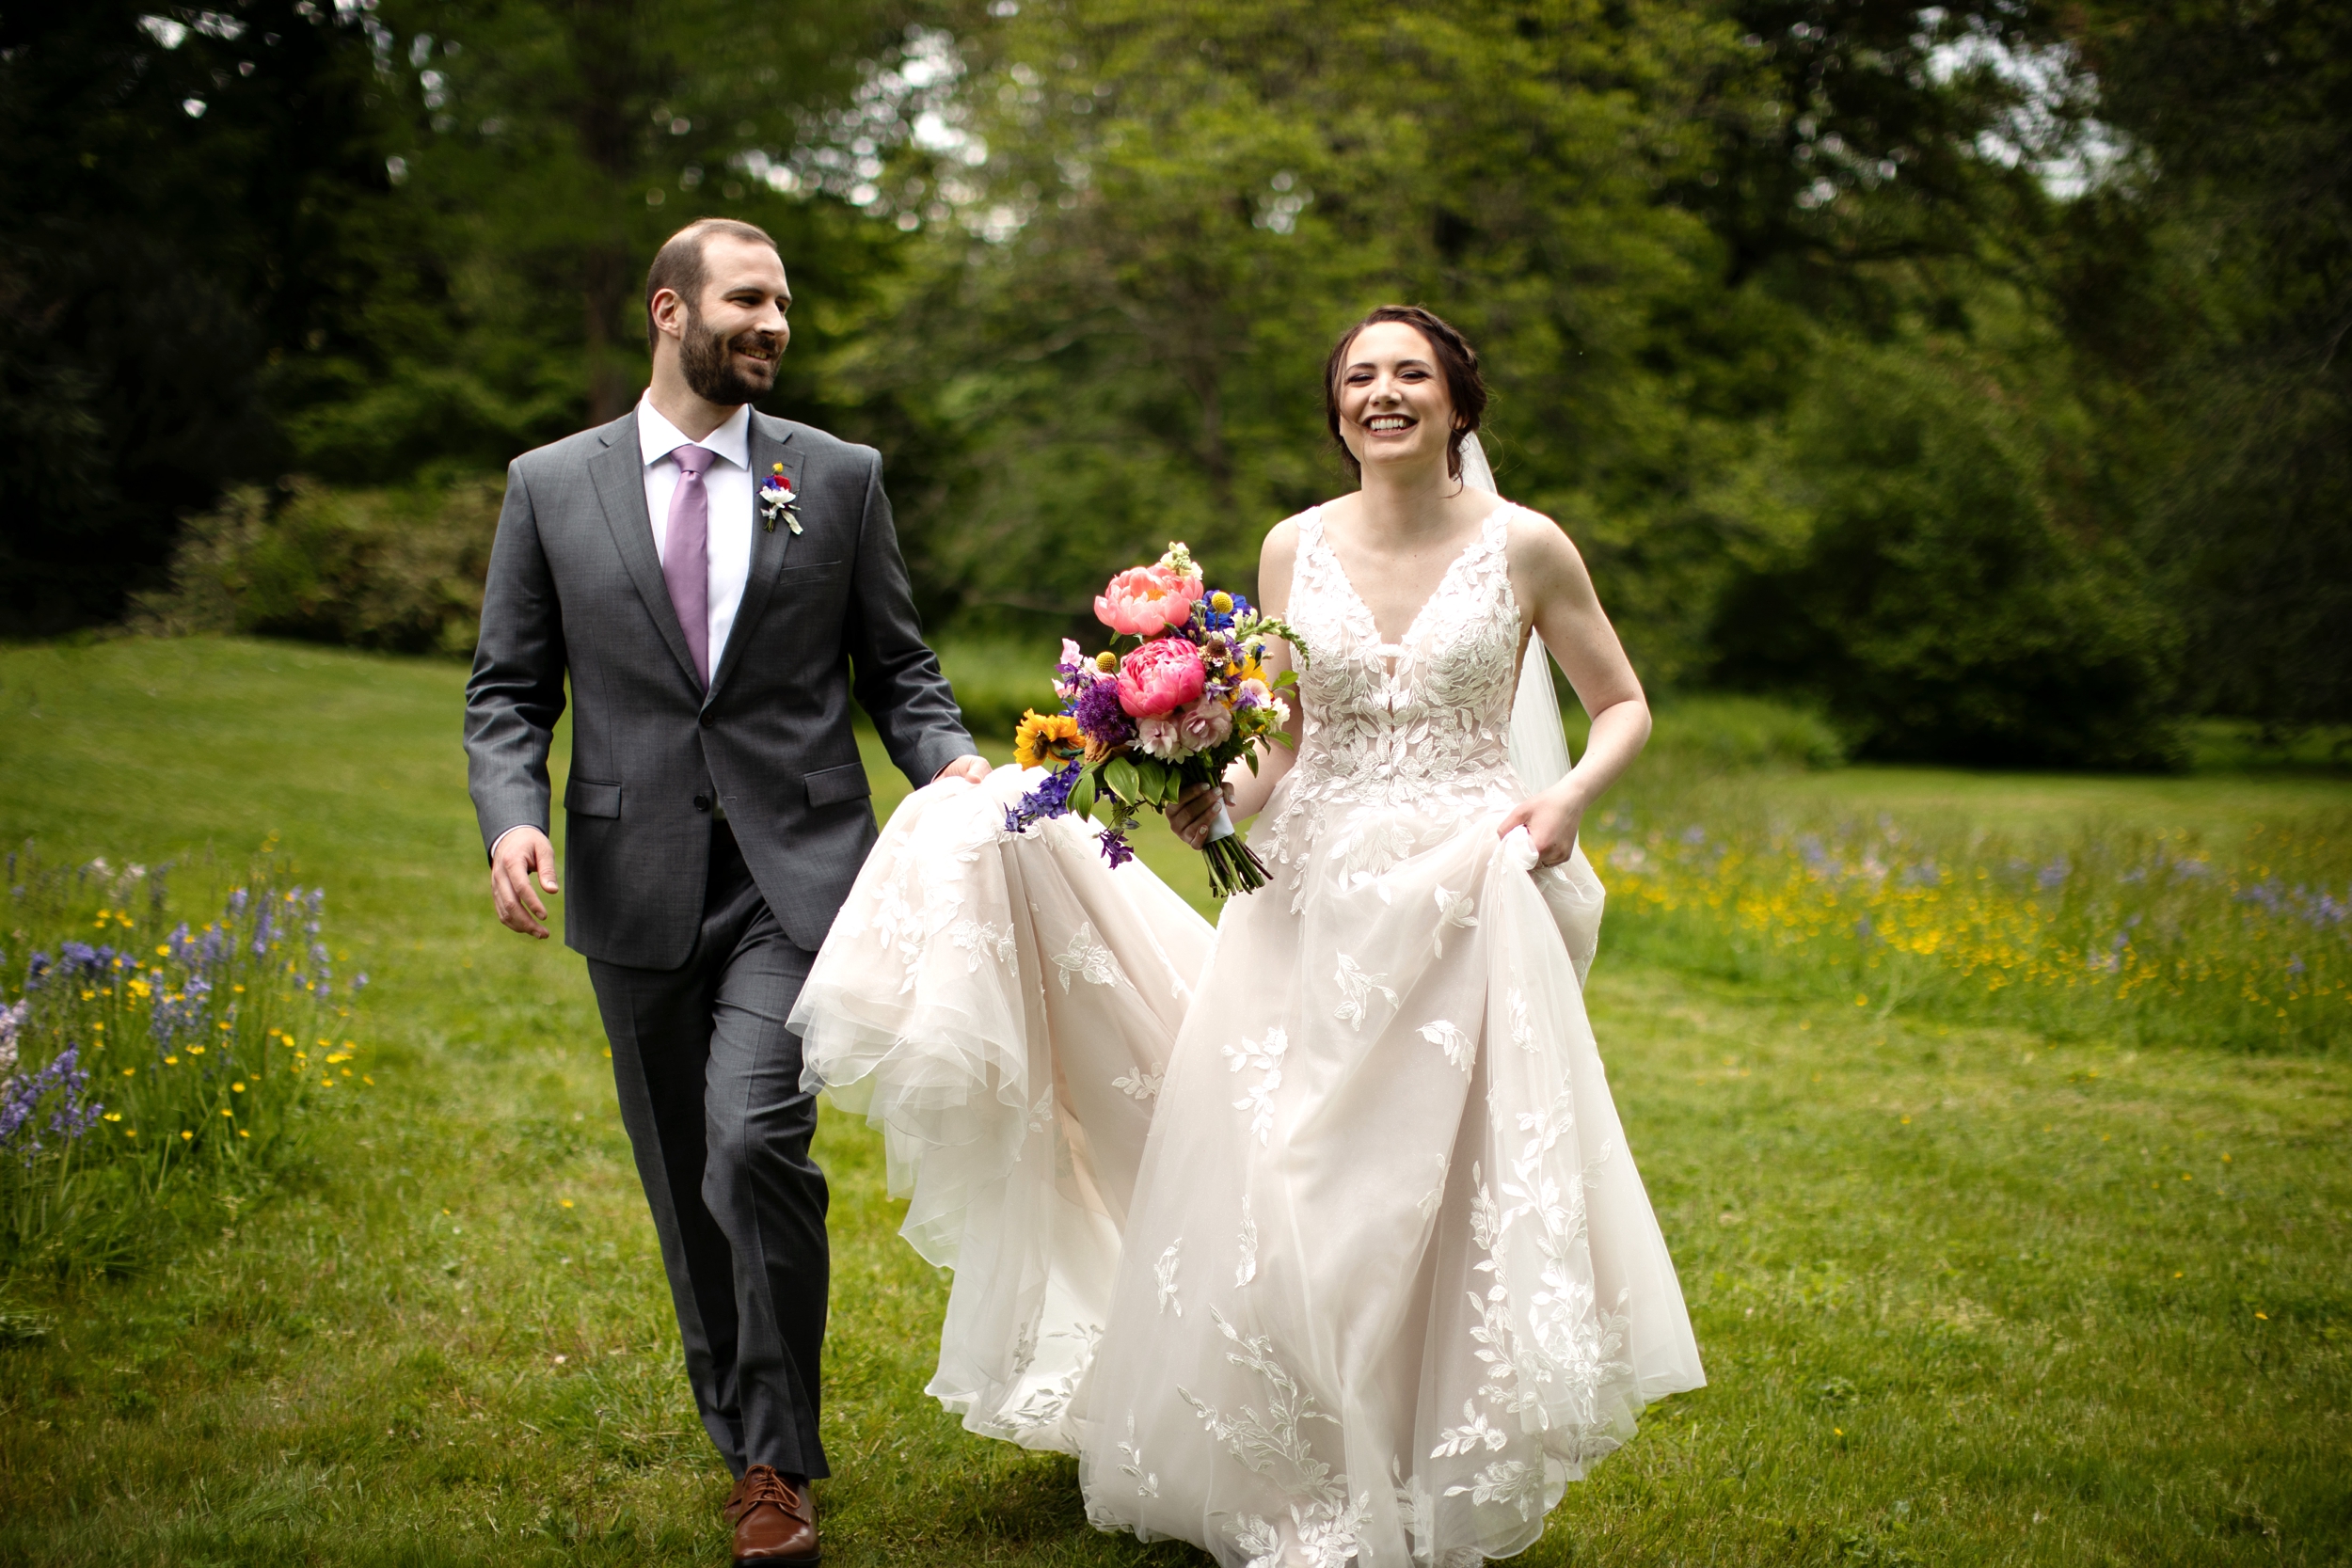 Tyler Arboretum Wedding, Philadelphia PA Wedding Photographer, Janae Rose Photography. Romantic Spring Wedding